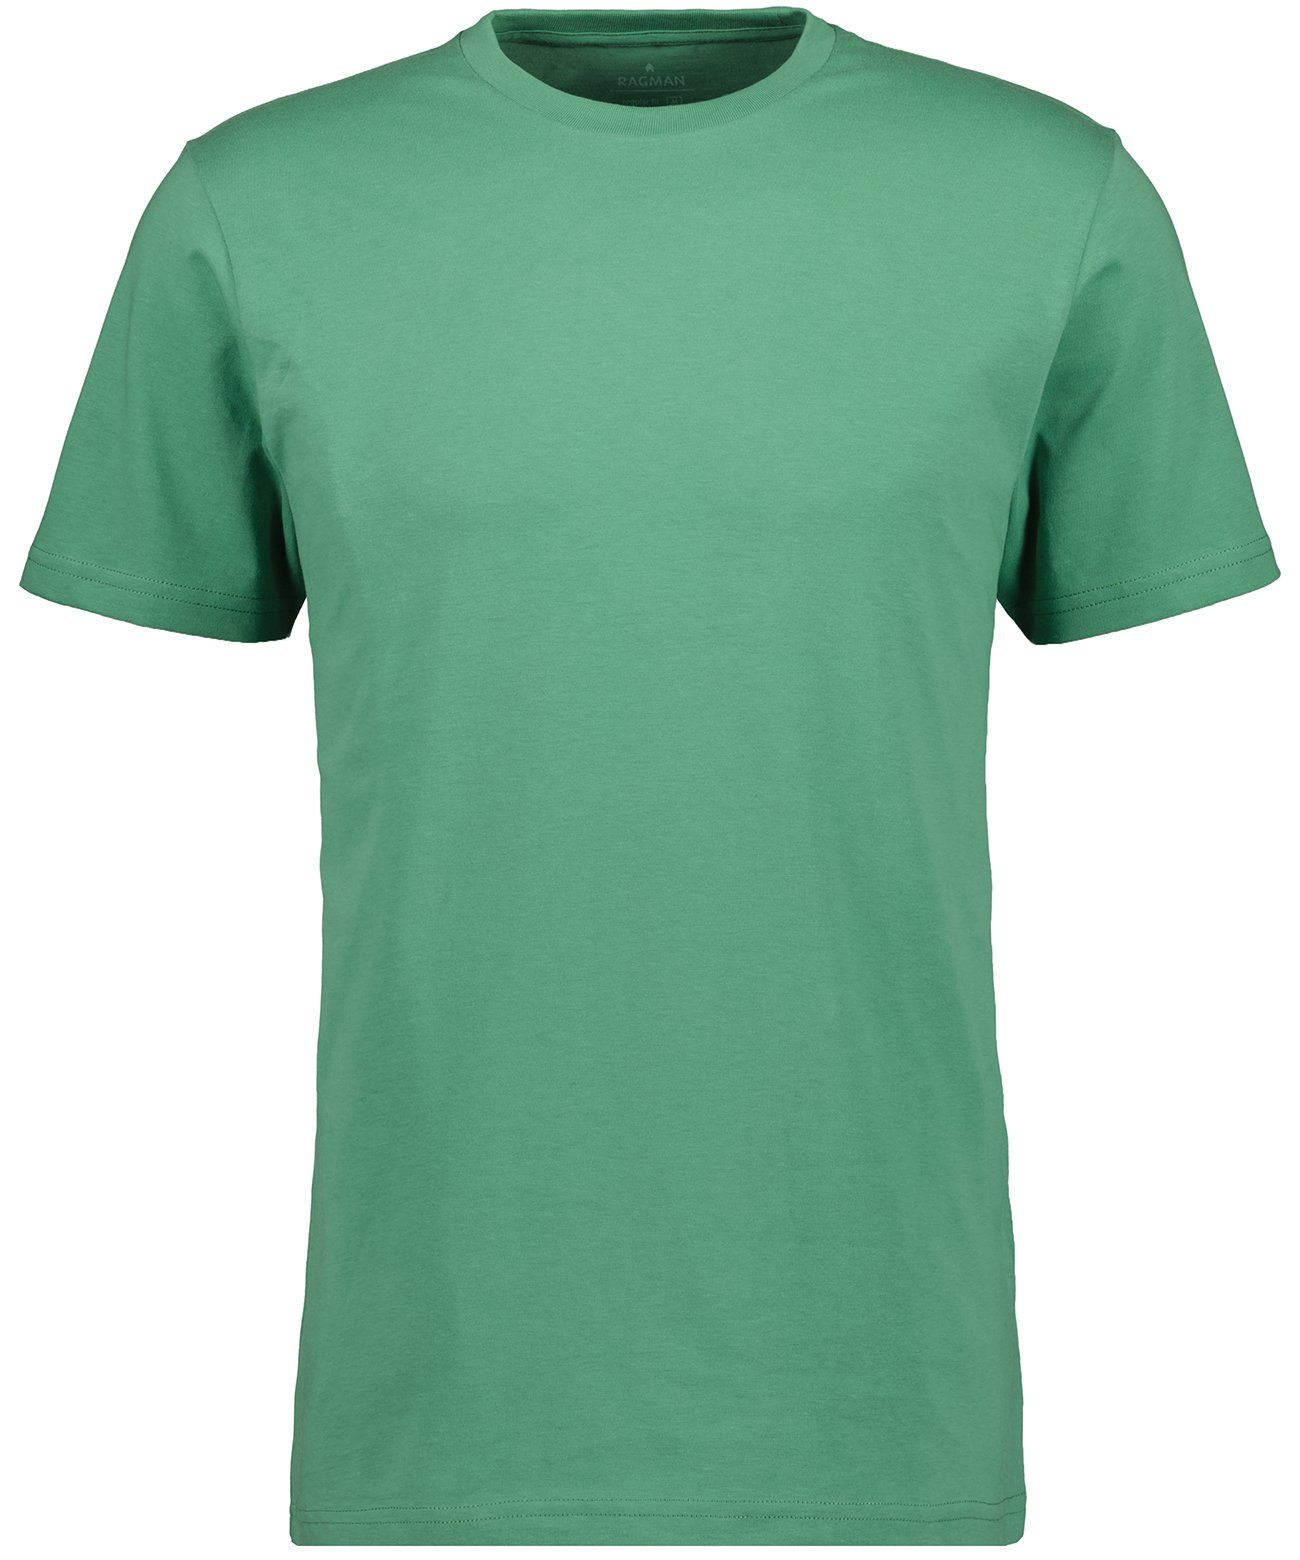 RAGMAN T-Shirt Grasgrün-370 | T-Shirts